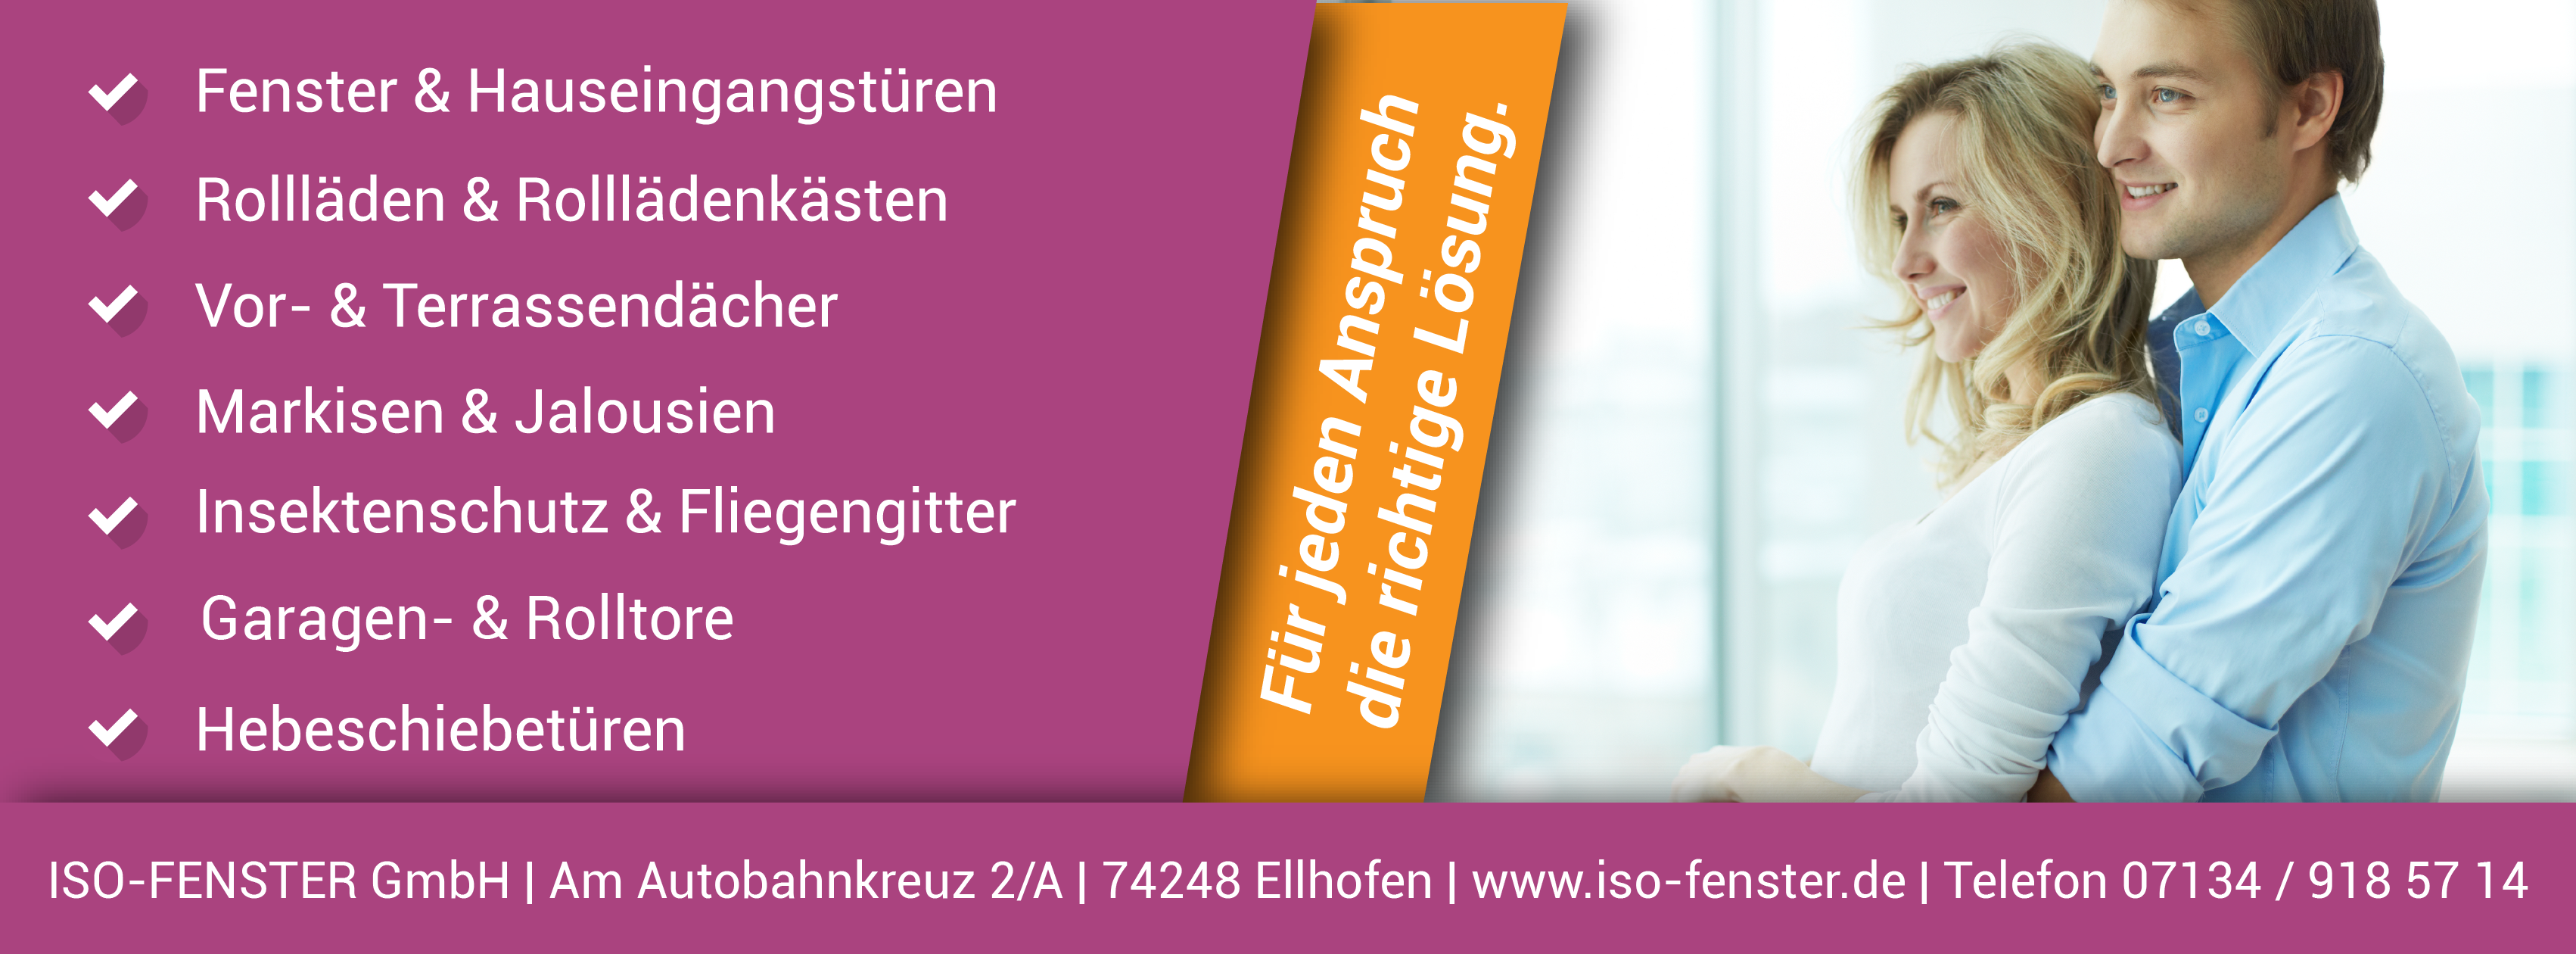 ➤ ISO-FENSTER GmbH 74248 Ellhofen Öffnungszeiten | Adresse | Telefon